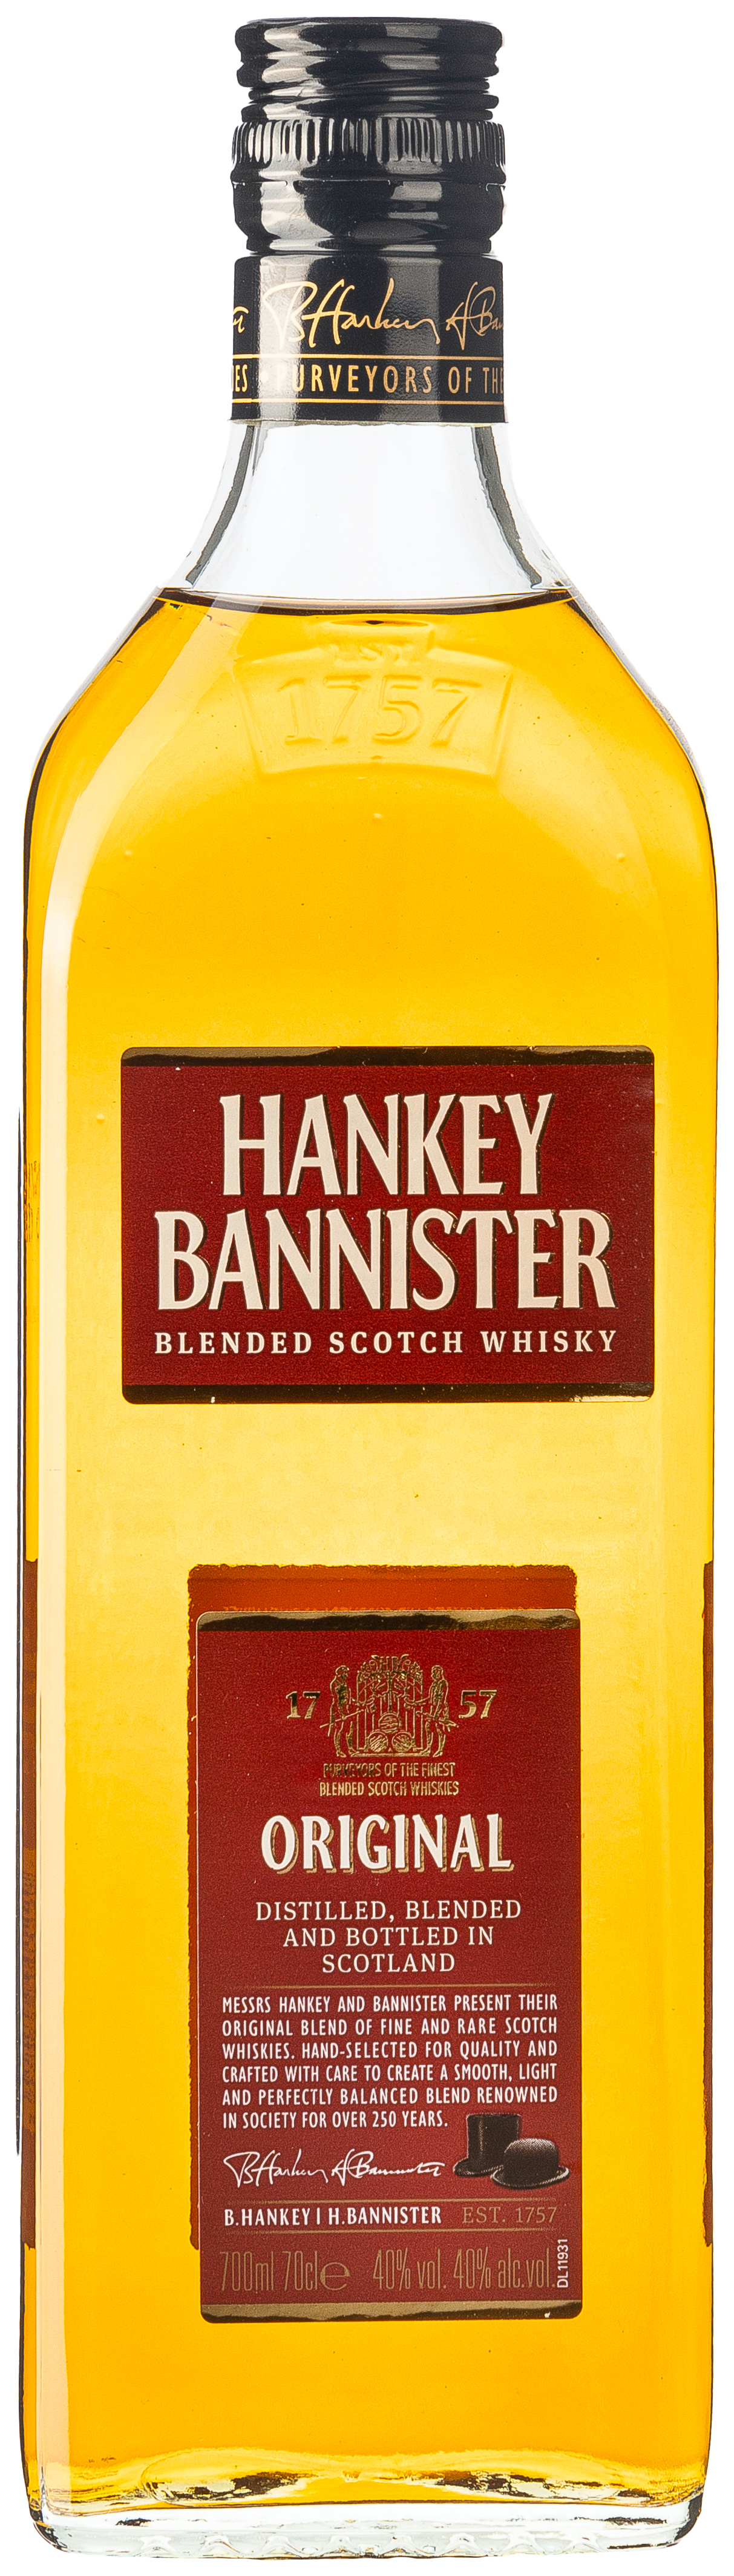 Hankey Bannister Blended Scotch Whisky 40% vol. 0,7L